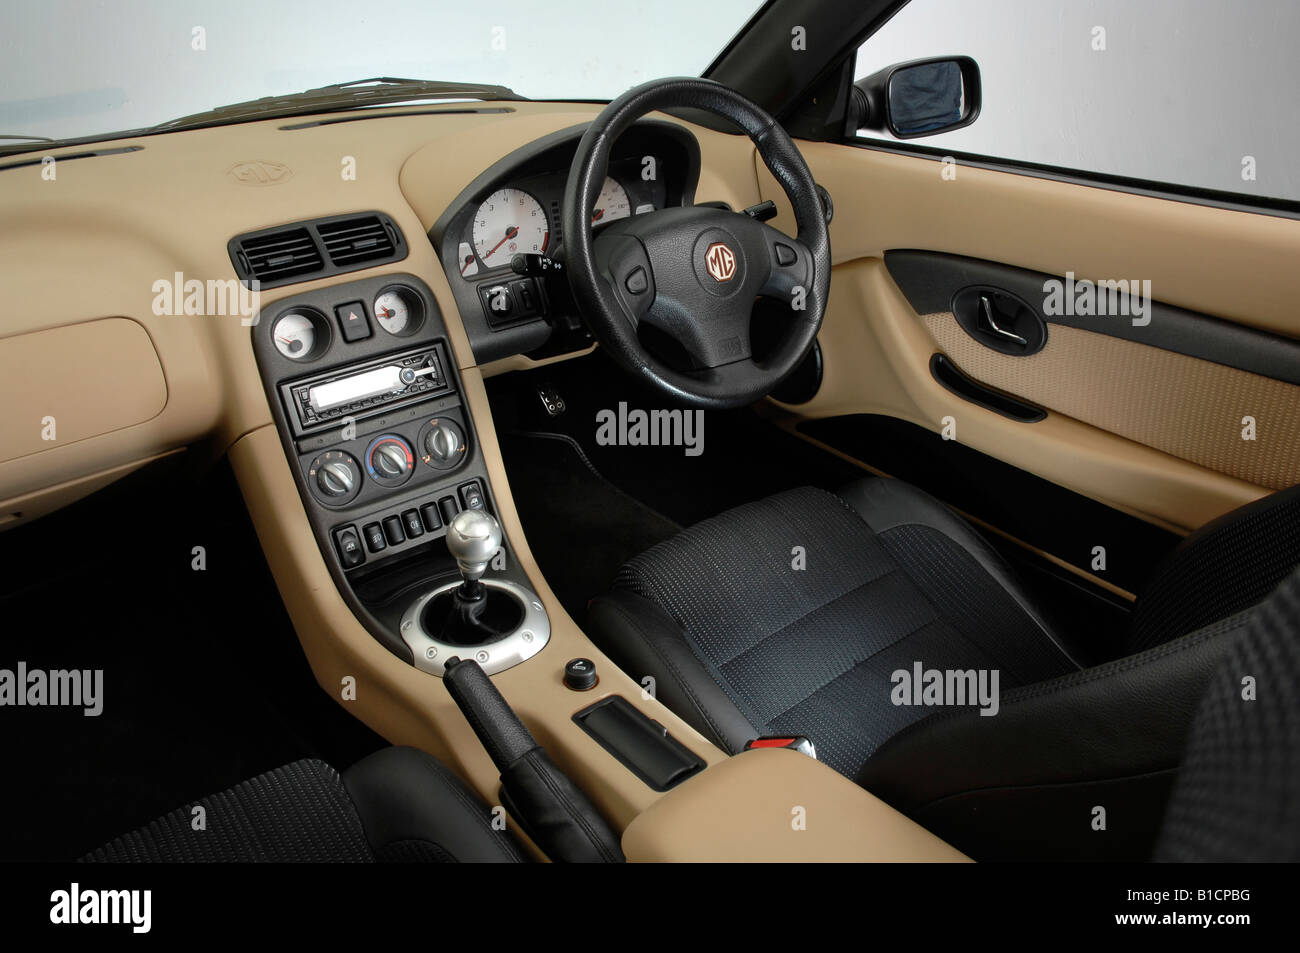 2002 MG TF 160 VVC interior Stock Photo